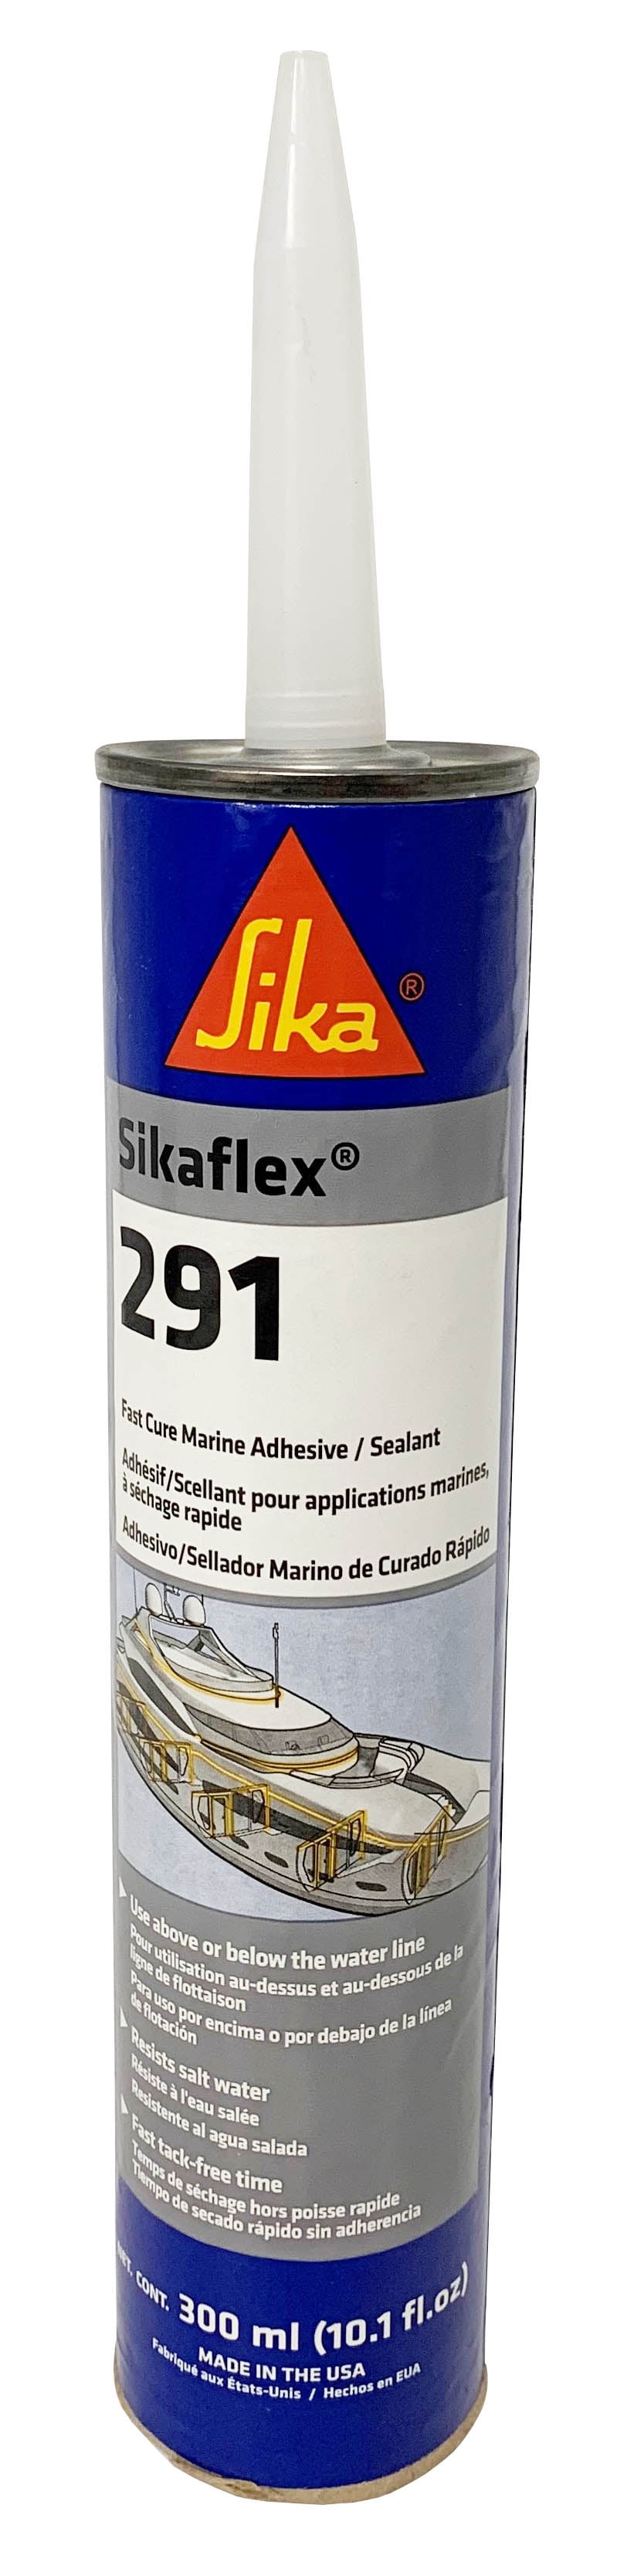 Sikaflex 291 blanco (cartucho 300 ml) Sika precios comprar